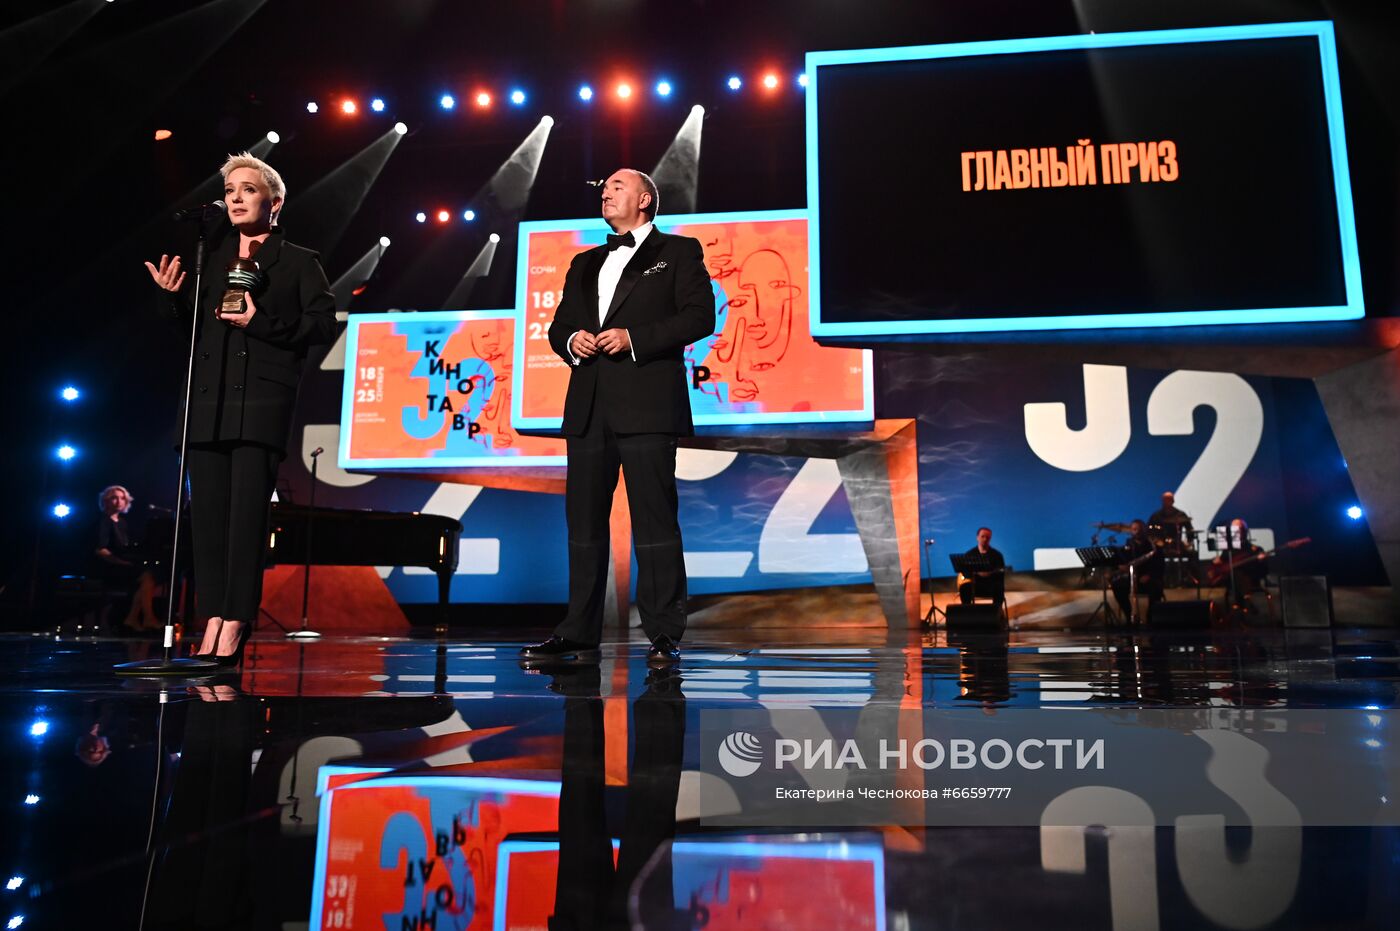 Торжественная церемония закрытия 32-го фестиваля российского кино "Кинотавр"